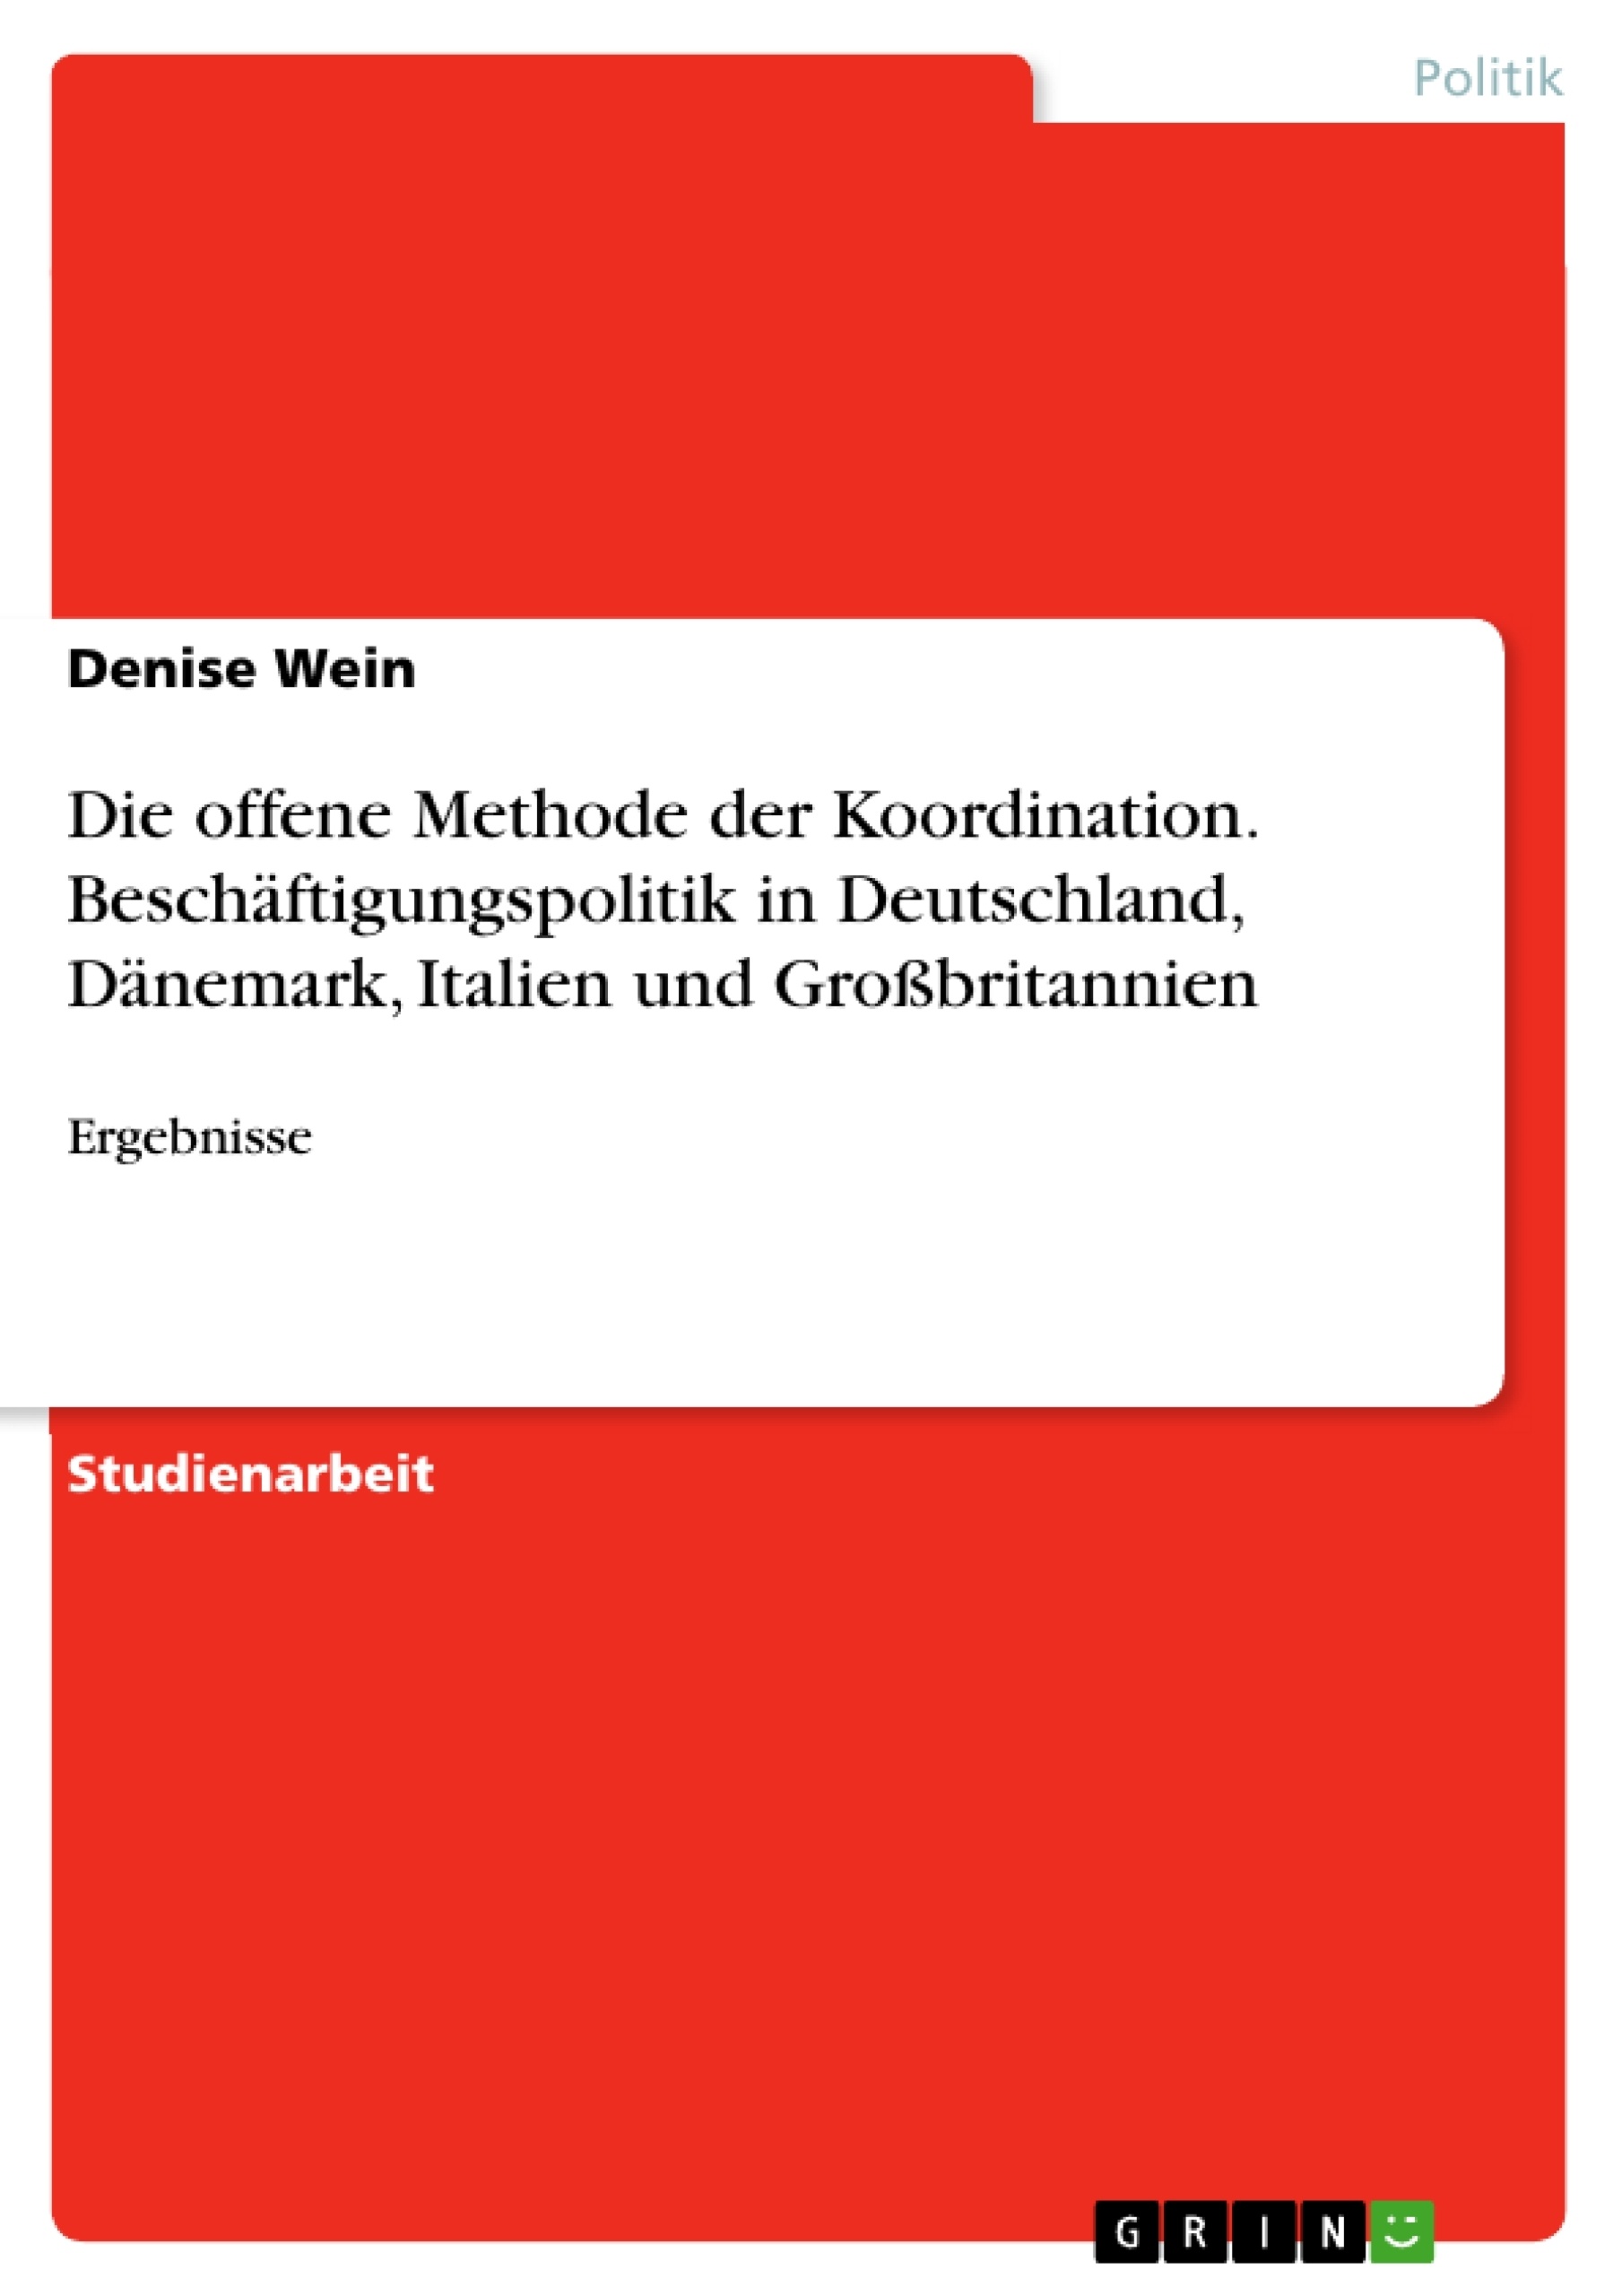 Titre: Die offene Methode der Koordination. Beschäftigungspolitik in Deutschland, Dänemark, Italien und Großbritannien